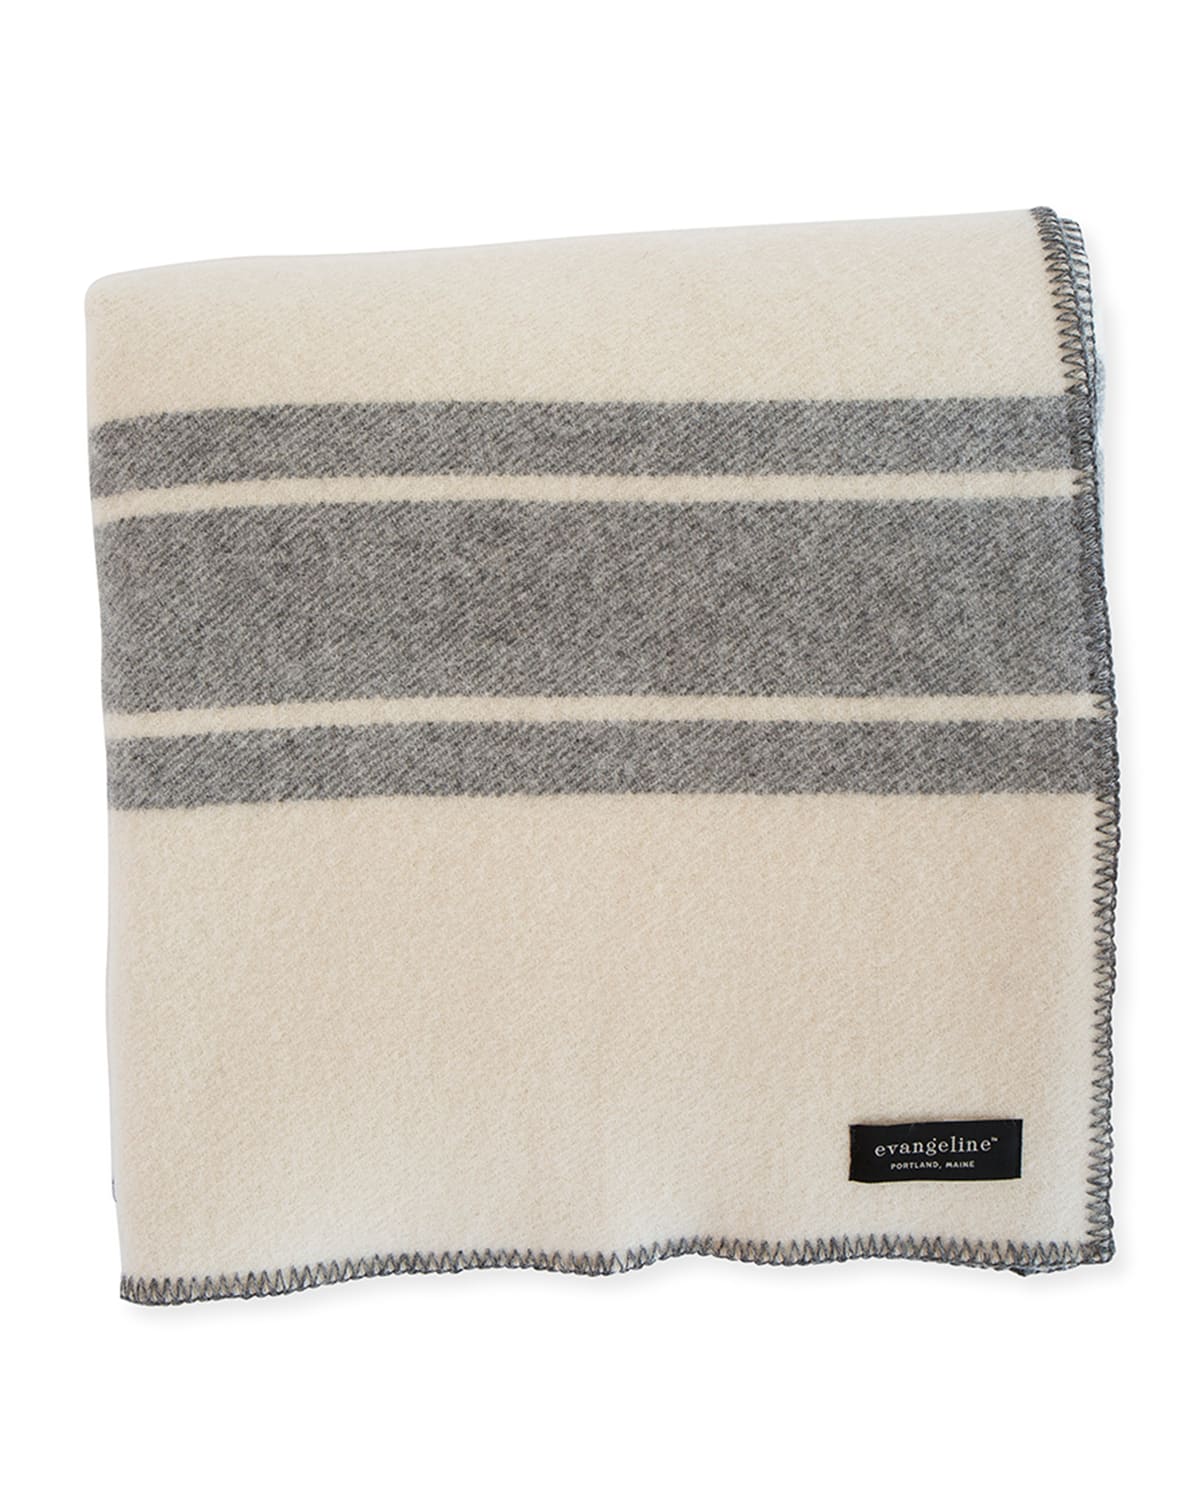 Evangeline Linens A Frame Merino Wool King Blanket, Classic Gray In Multi